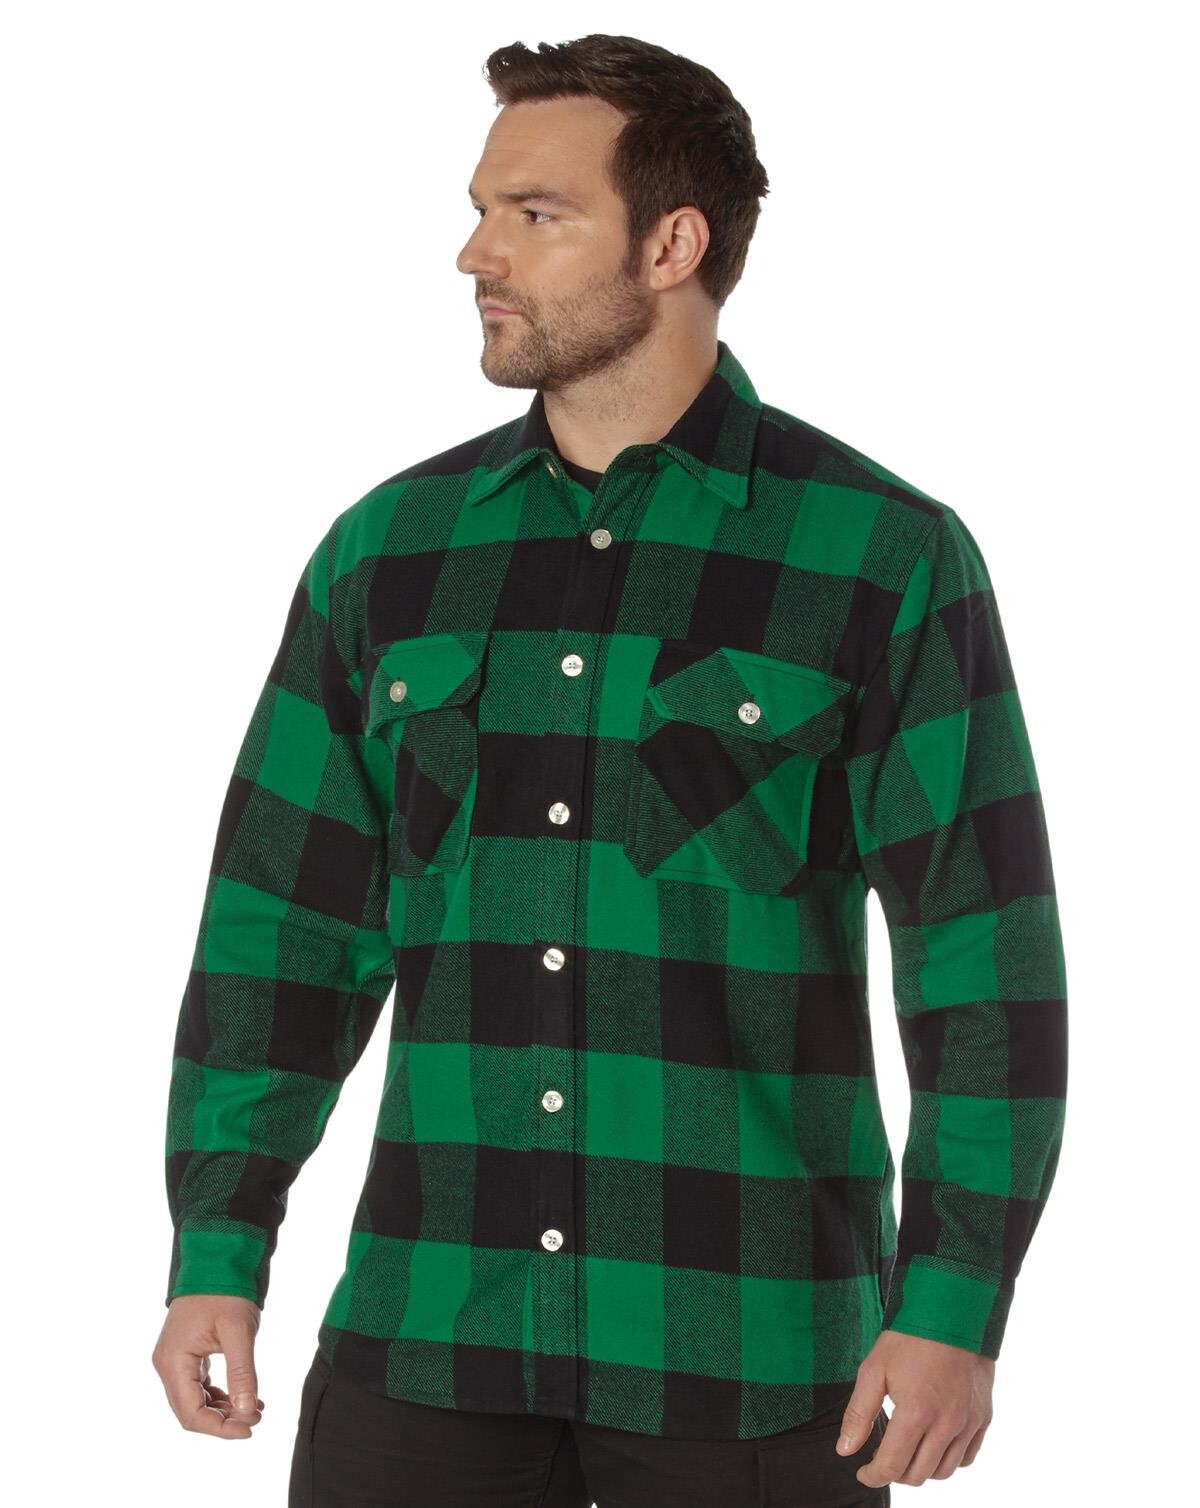 #1 på vores liste over skovmandsskjorter er Skovmandsskjorte